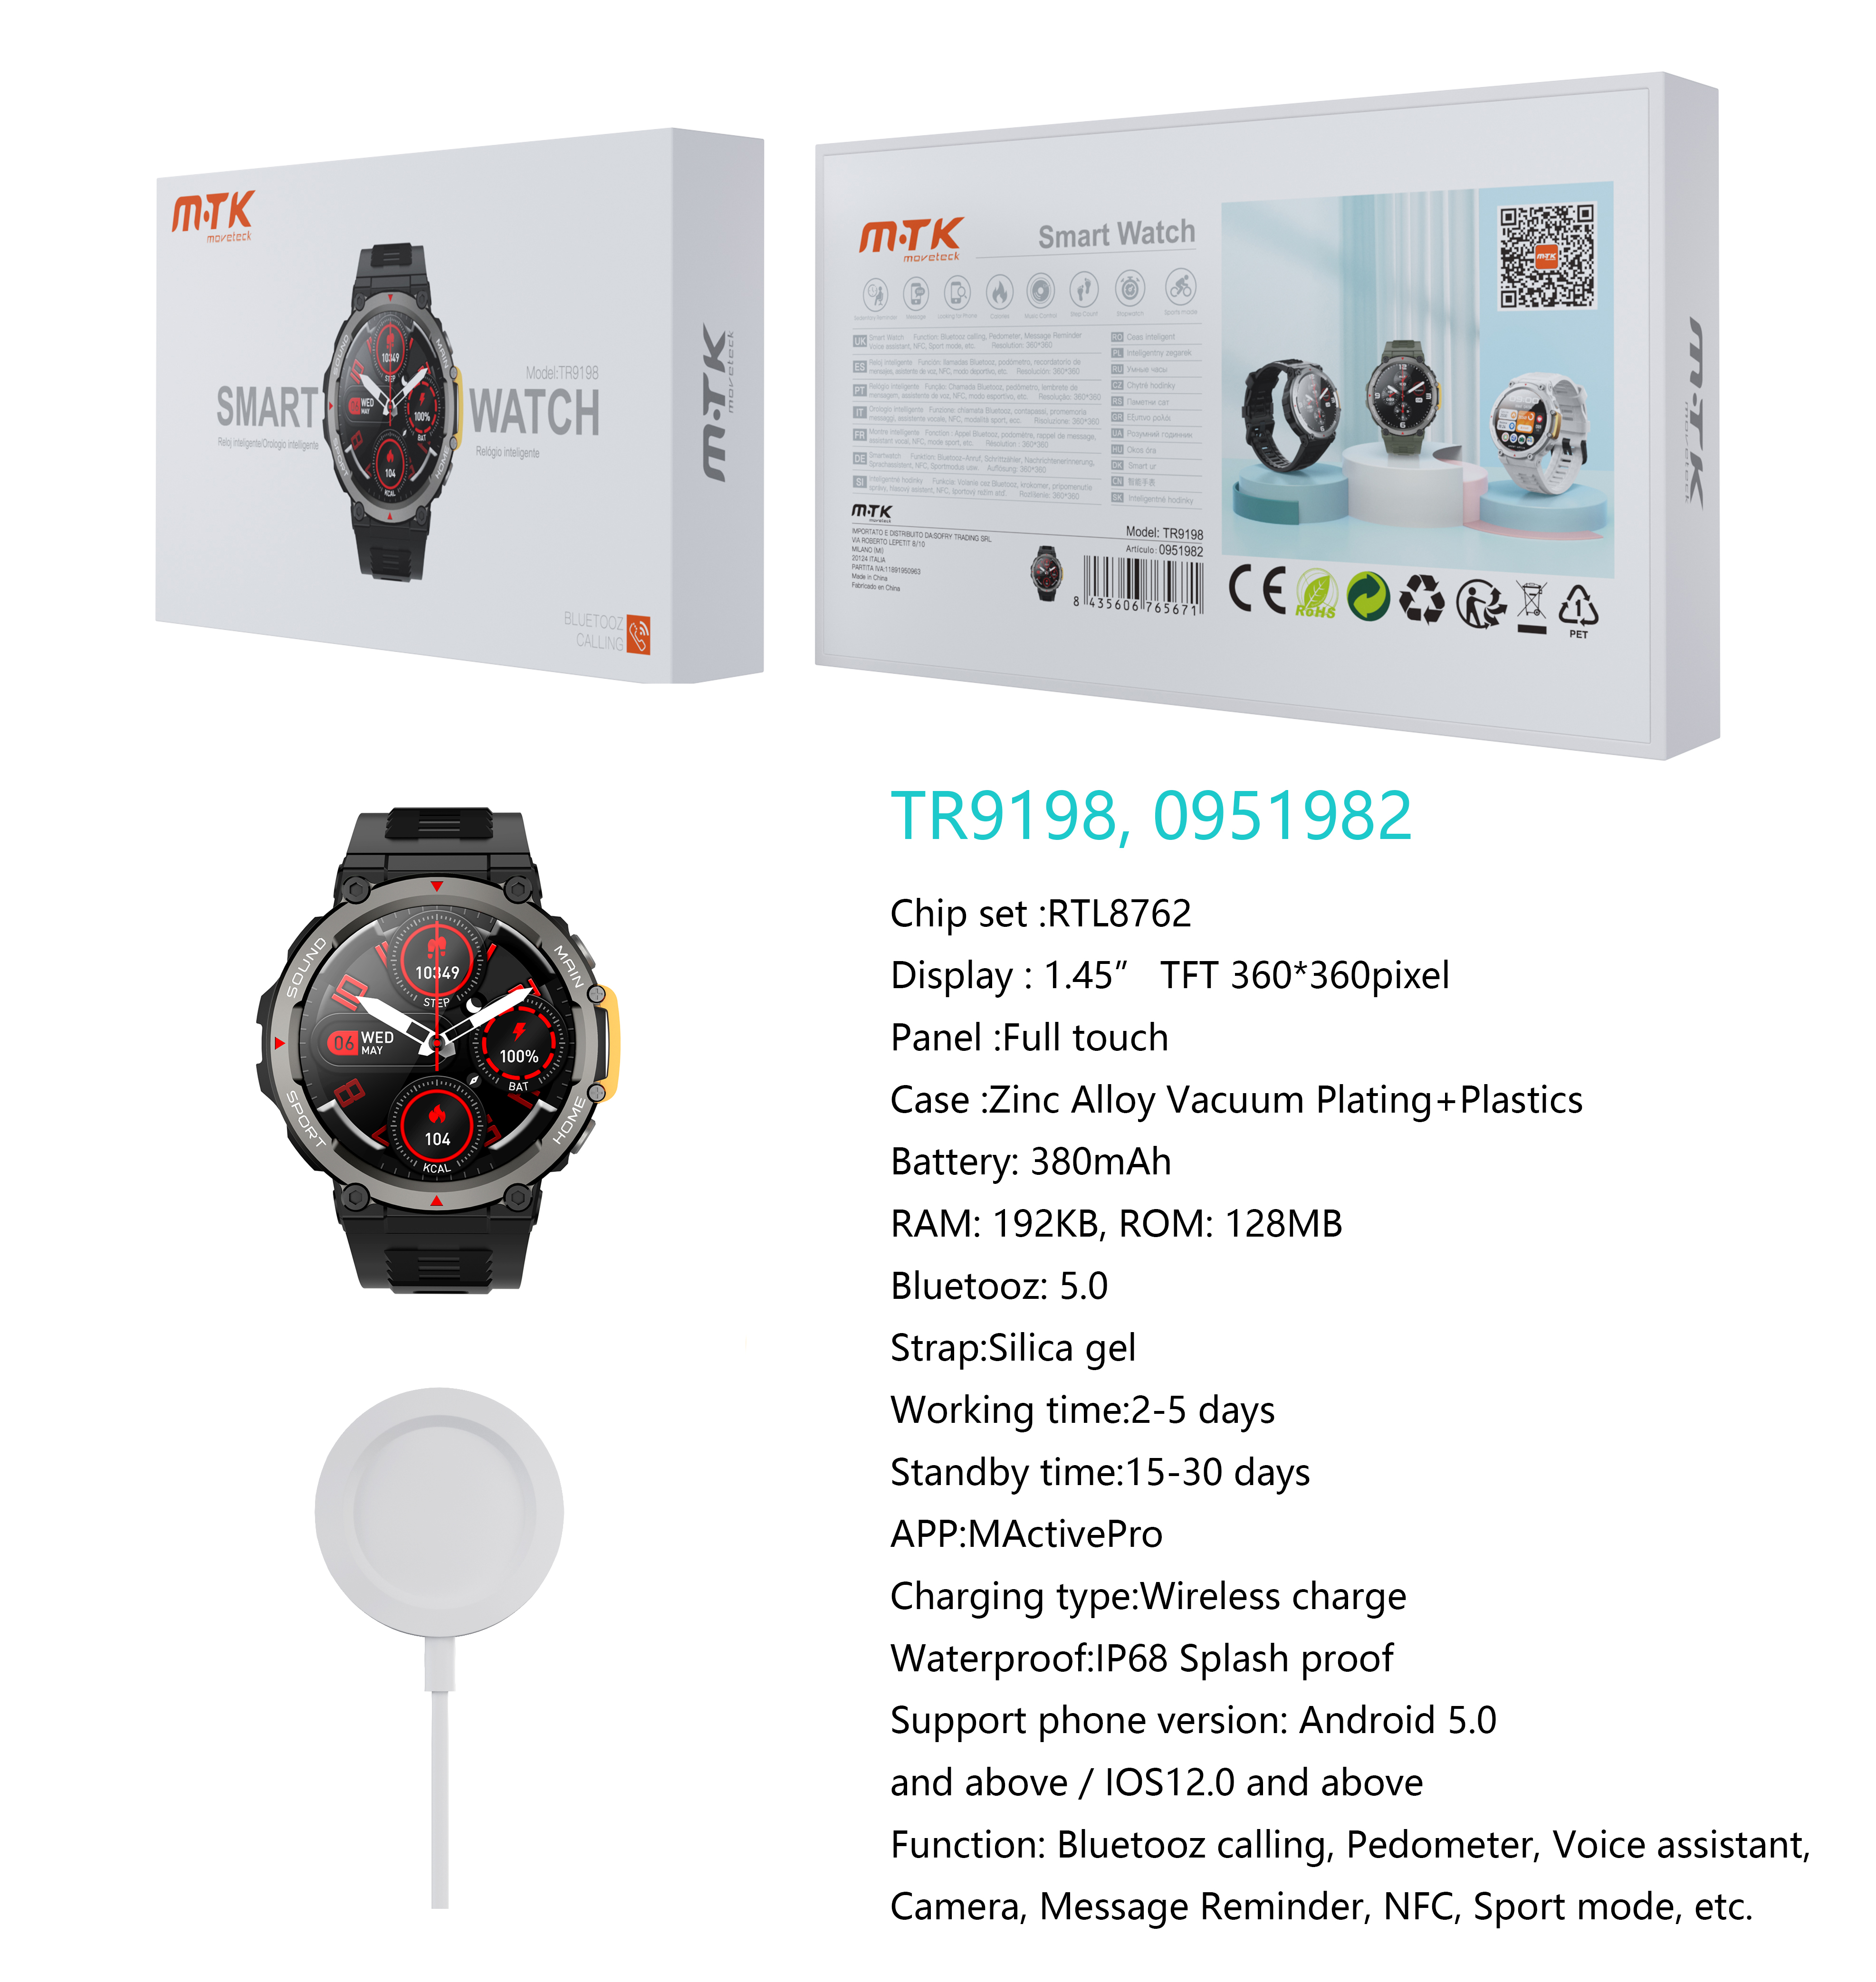 TR9198 NE Reloj Inteligente con bluetooth 5.0, Pantalla tactil de 1.45 pulgadas Con Cargador inalambrico, Soporta NFC de Puerta Inteligente, llemadas,